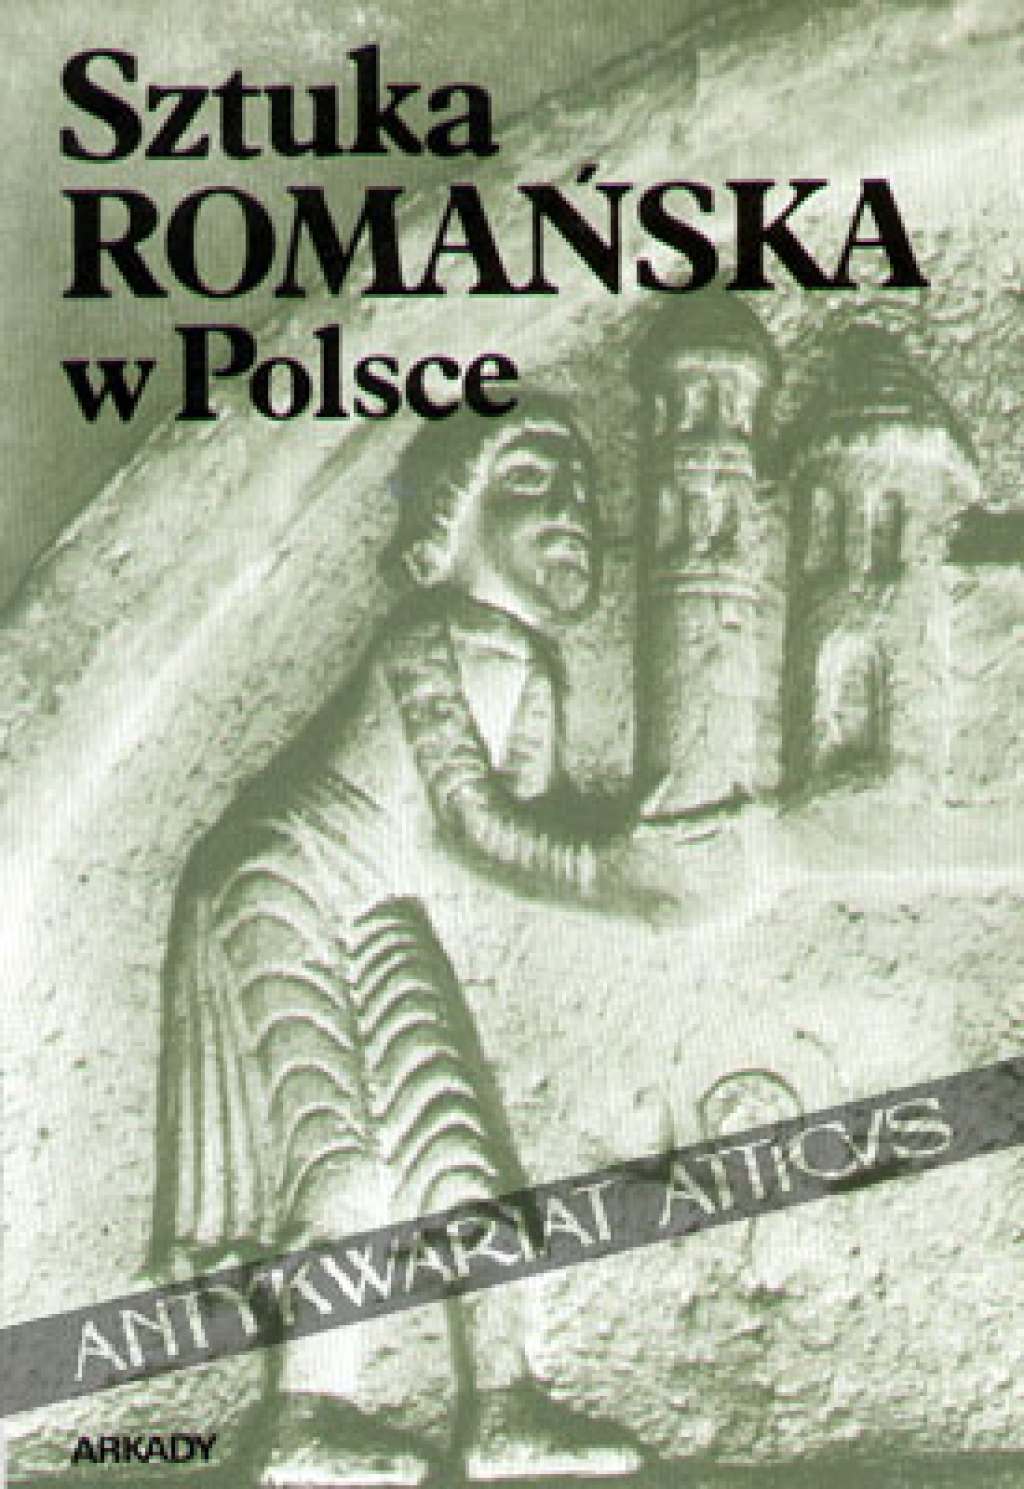 Sztuka romańska w Polsce